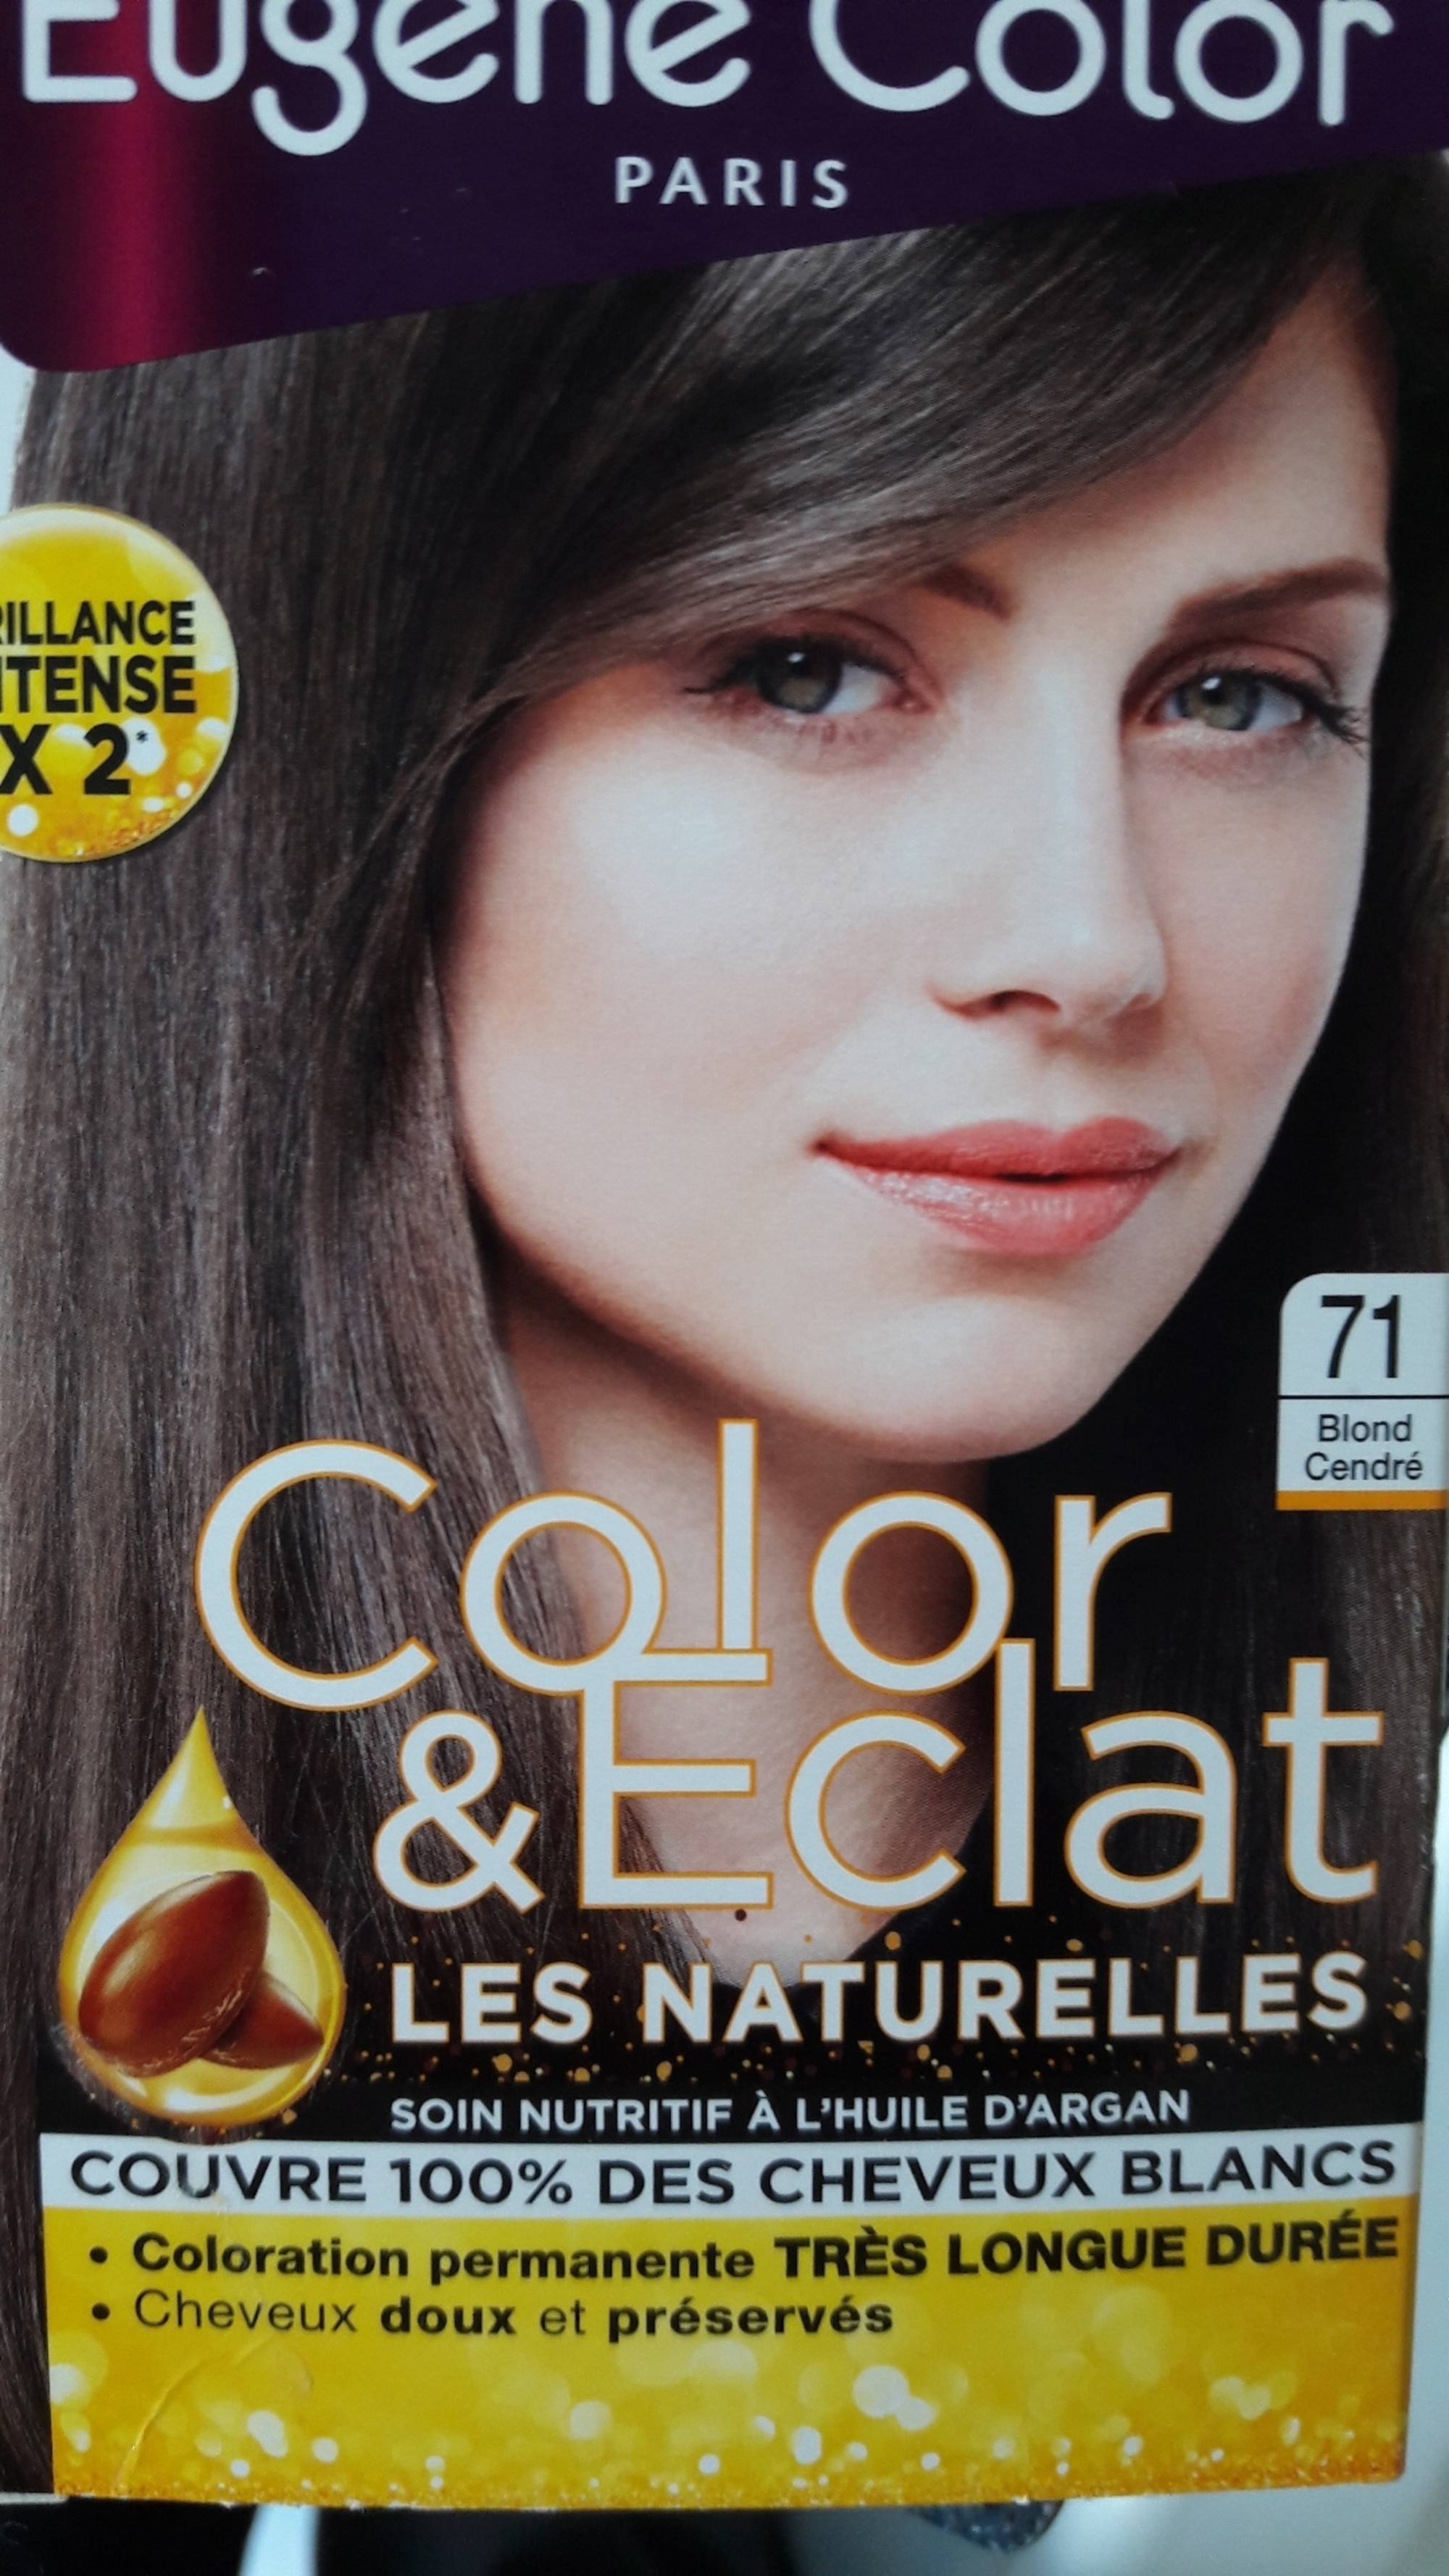 EUGÈNE COLOR - Color & éclat les naturelles - Coloration permanente 71 blond cendré